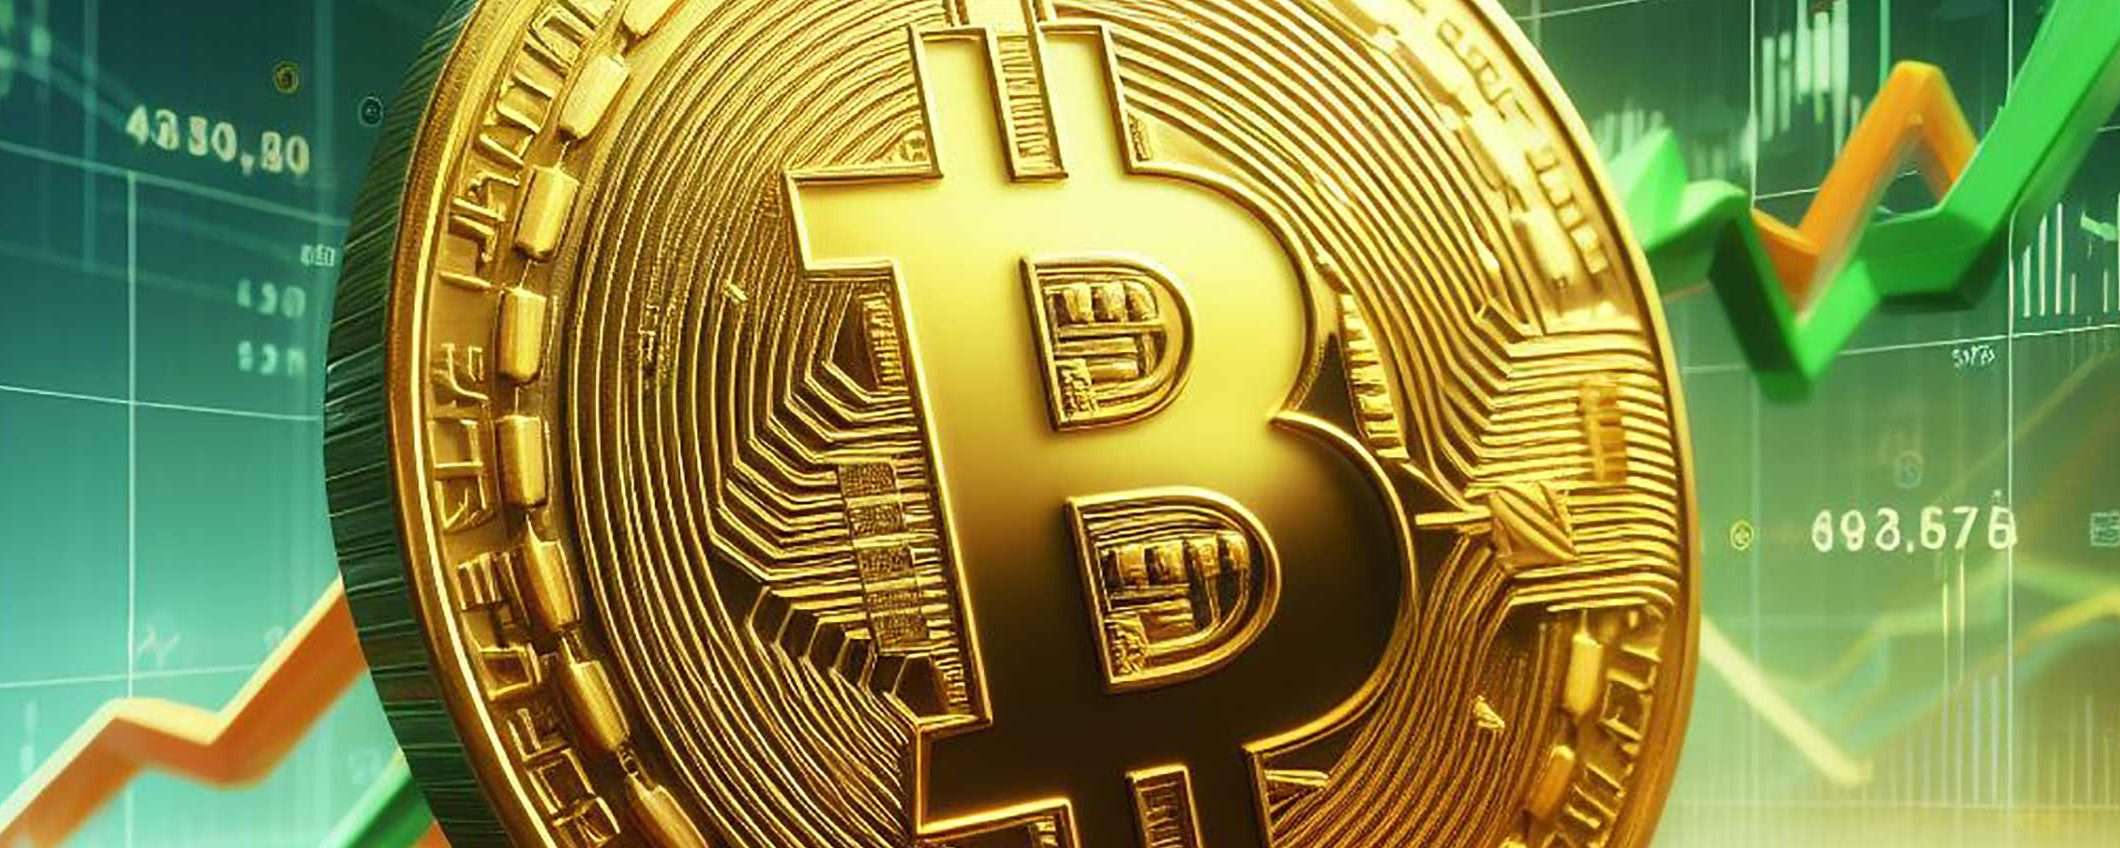 Bitcoin torna a salire: la crypto oltre i 34.500 dollari